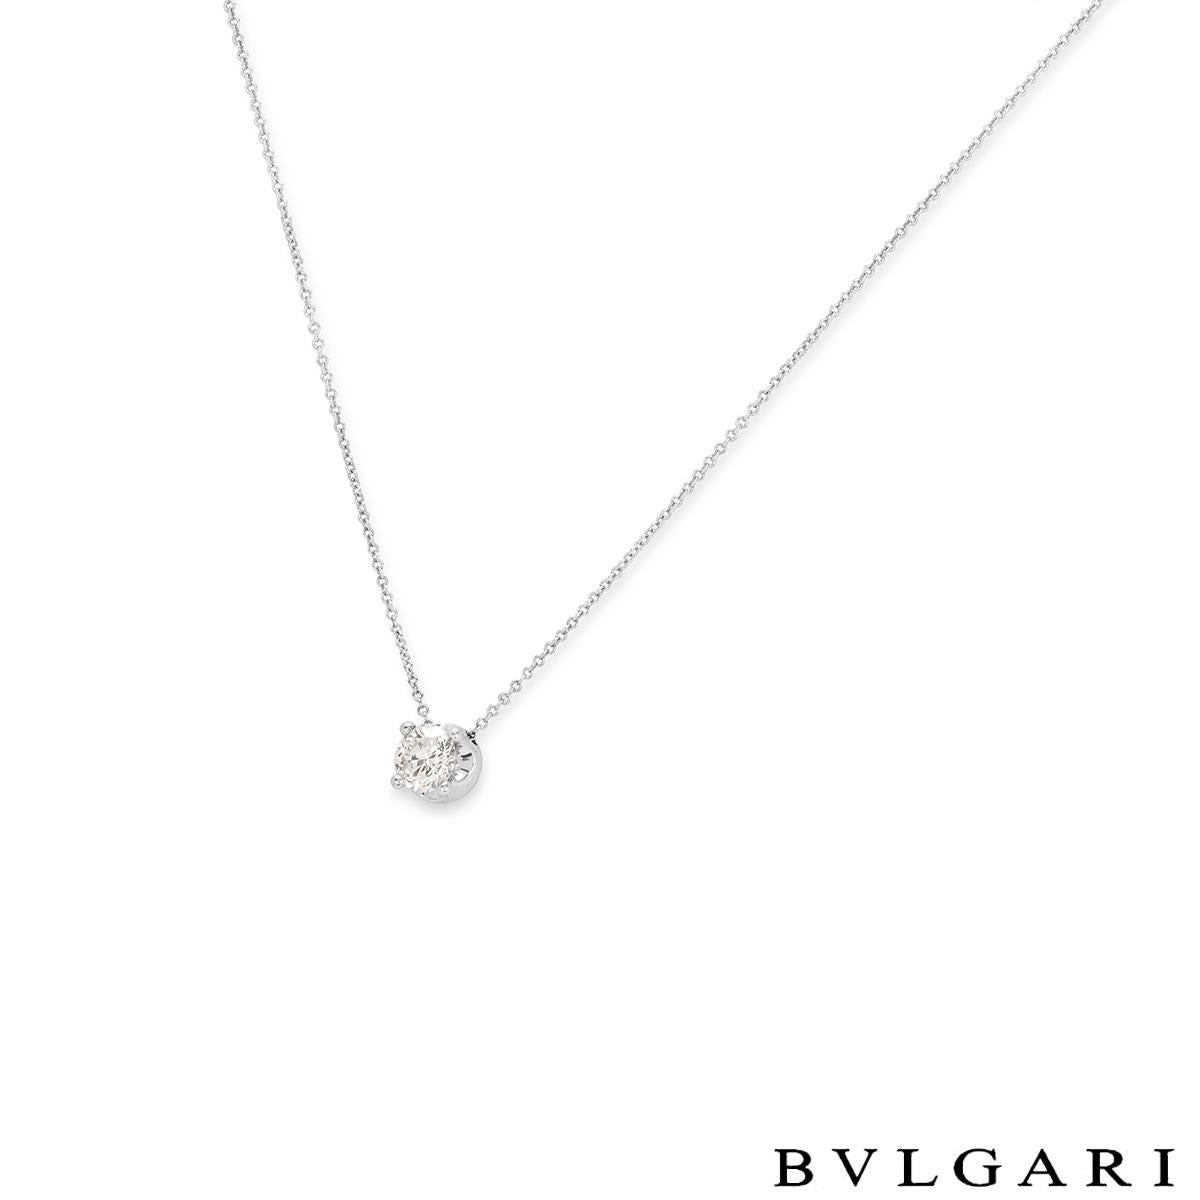 Eine atemberaubende Diamant-Halskette aus 18 Karat Weißgold von Bvlgari aus der Corona-Kollektion. Die Halskette besteht aus einem runden Diamanten mit Brillantschliff in einer erhöhten Vier-Krallen-Fassung, mit einem Gewicht von 1,02ct, H Farbe und